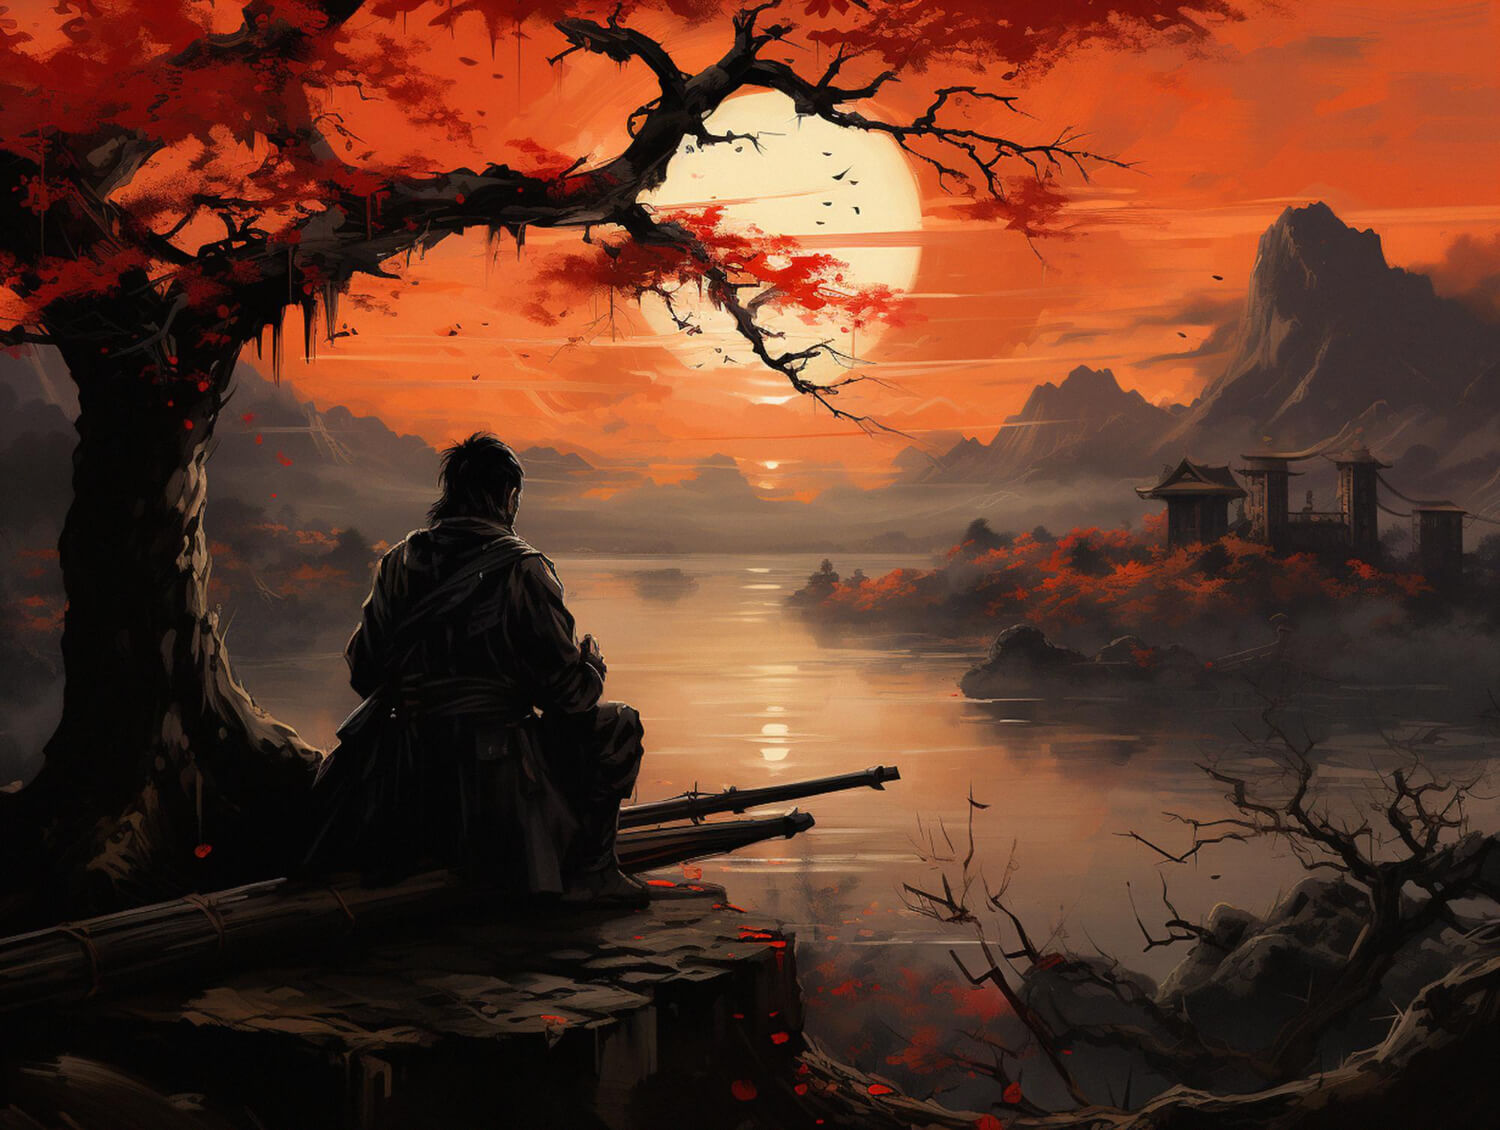 edo-sunset-with-samurai-cherry-blossoms-1